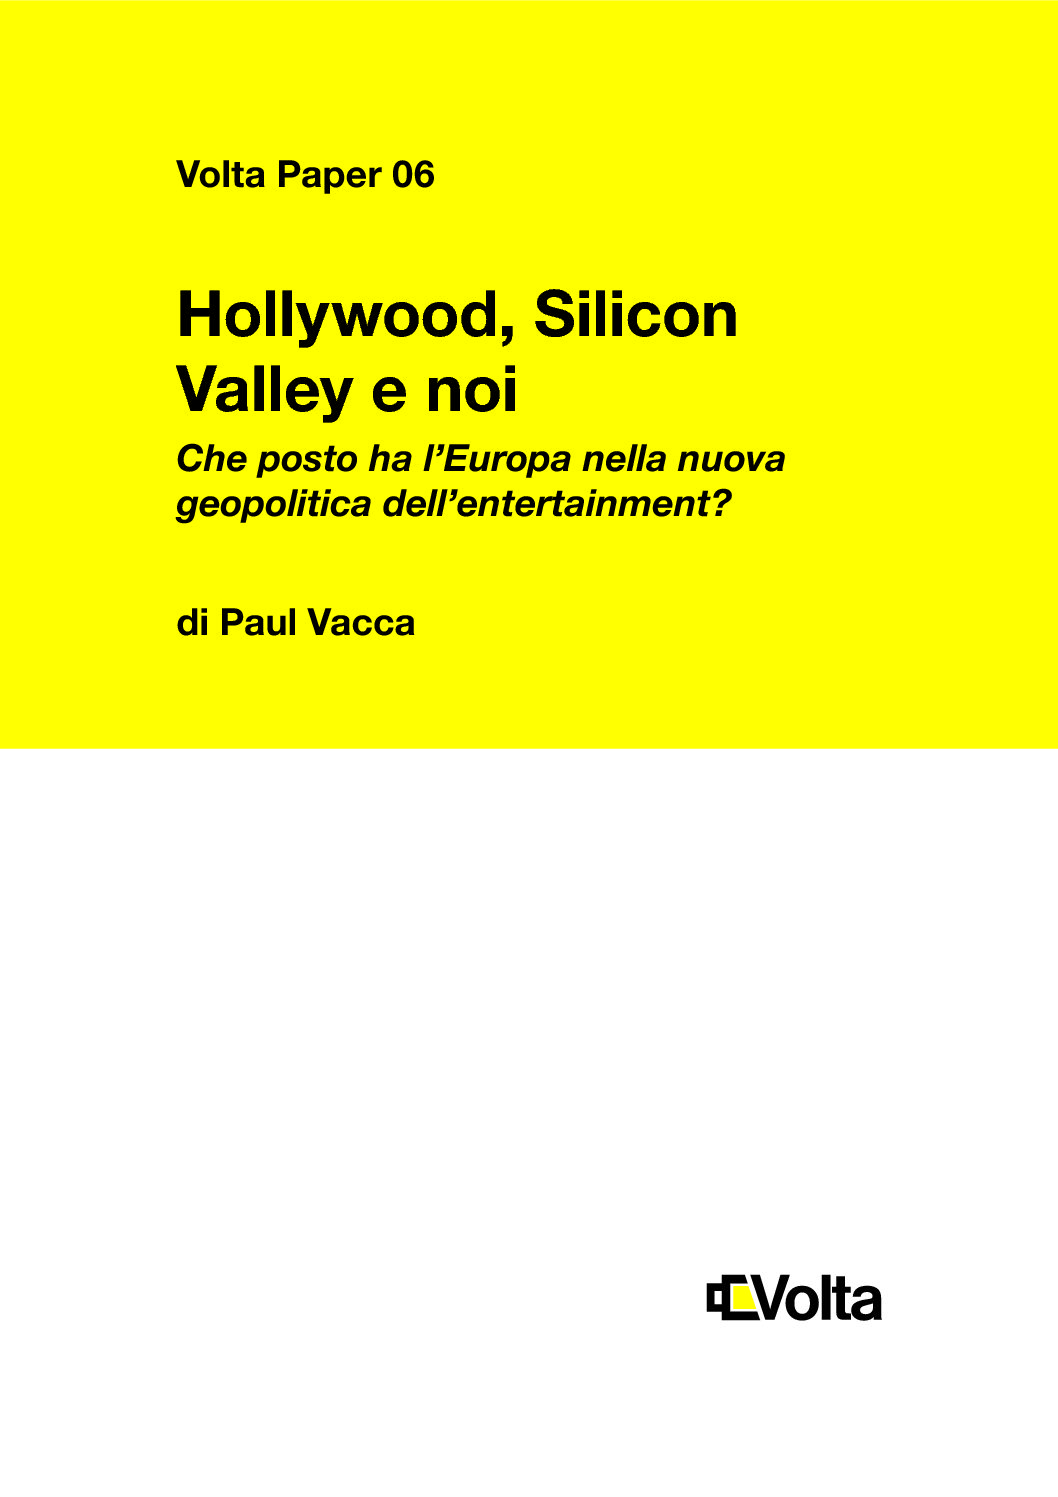 Hollywood, Silicon Valley e noi